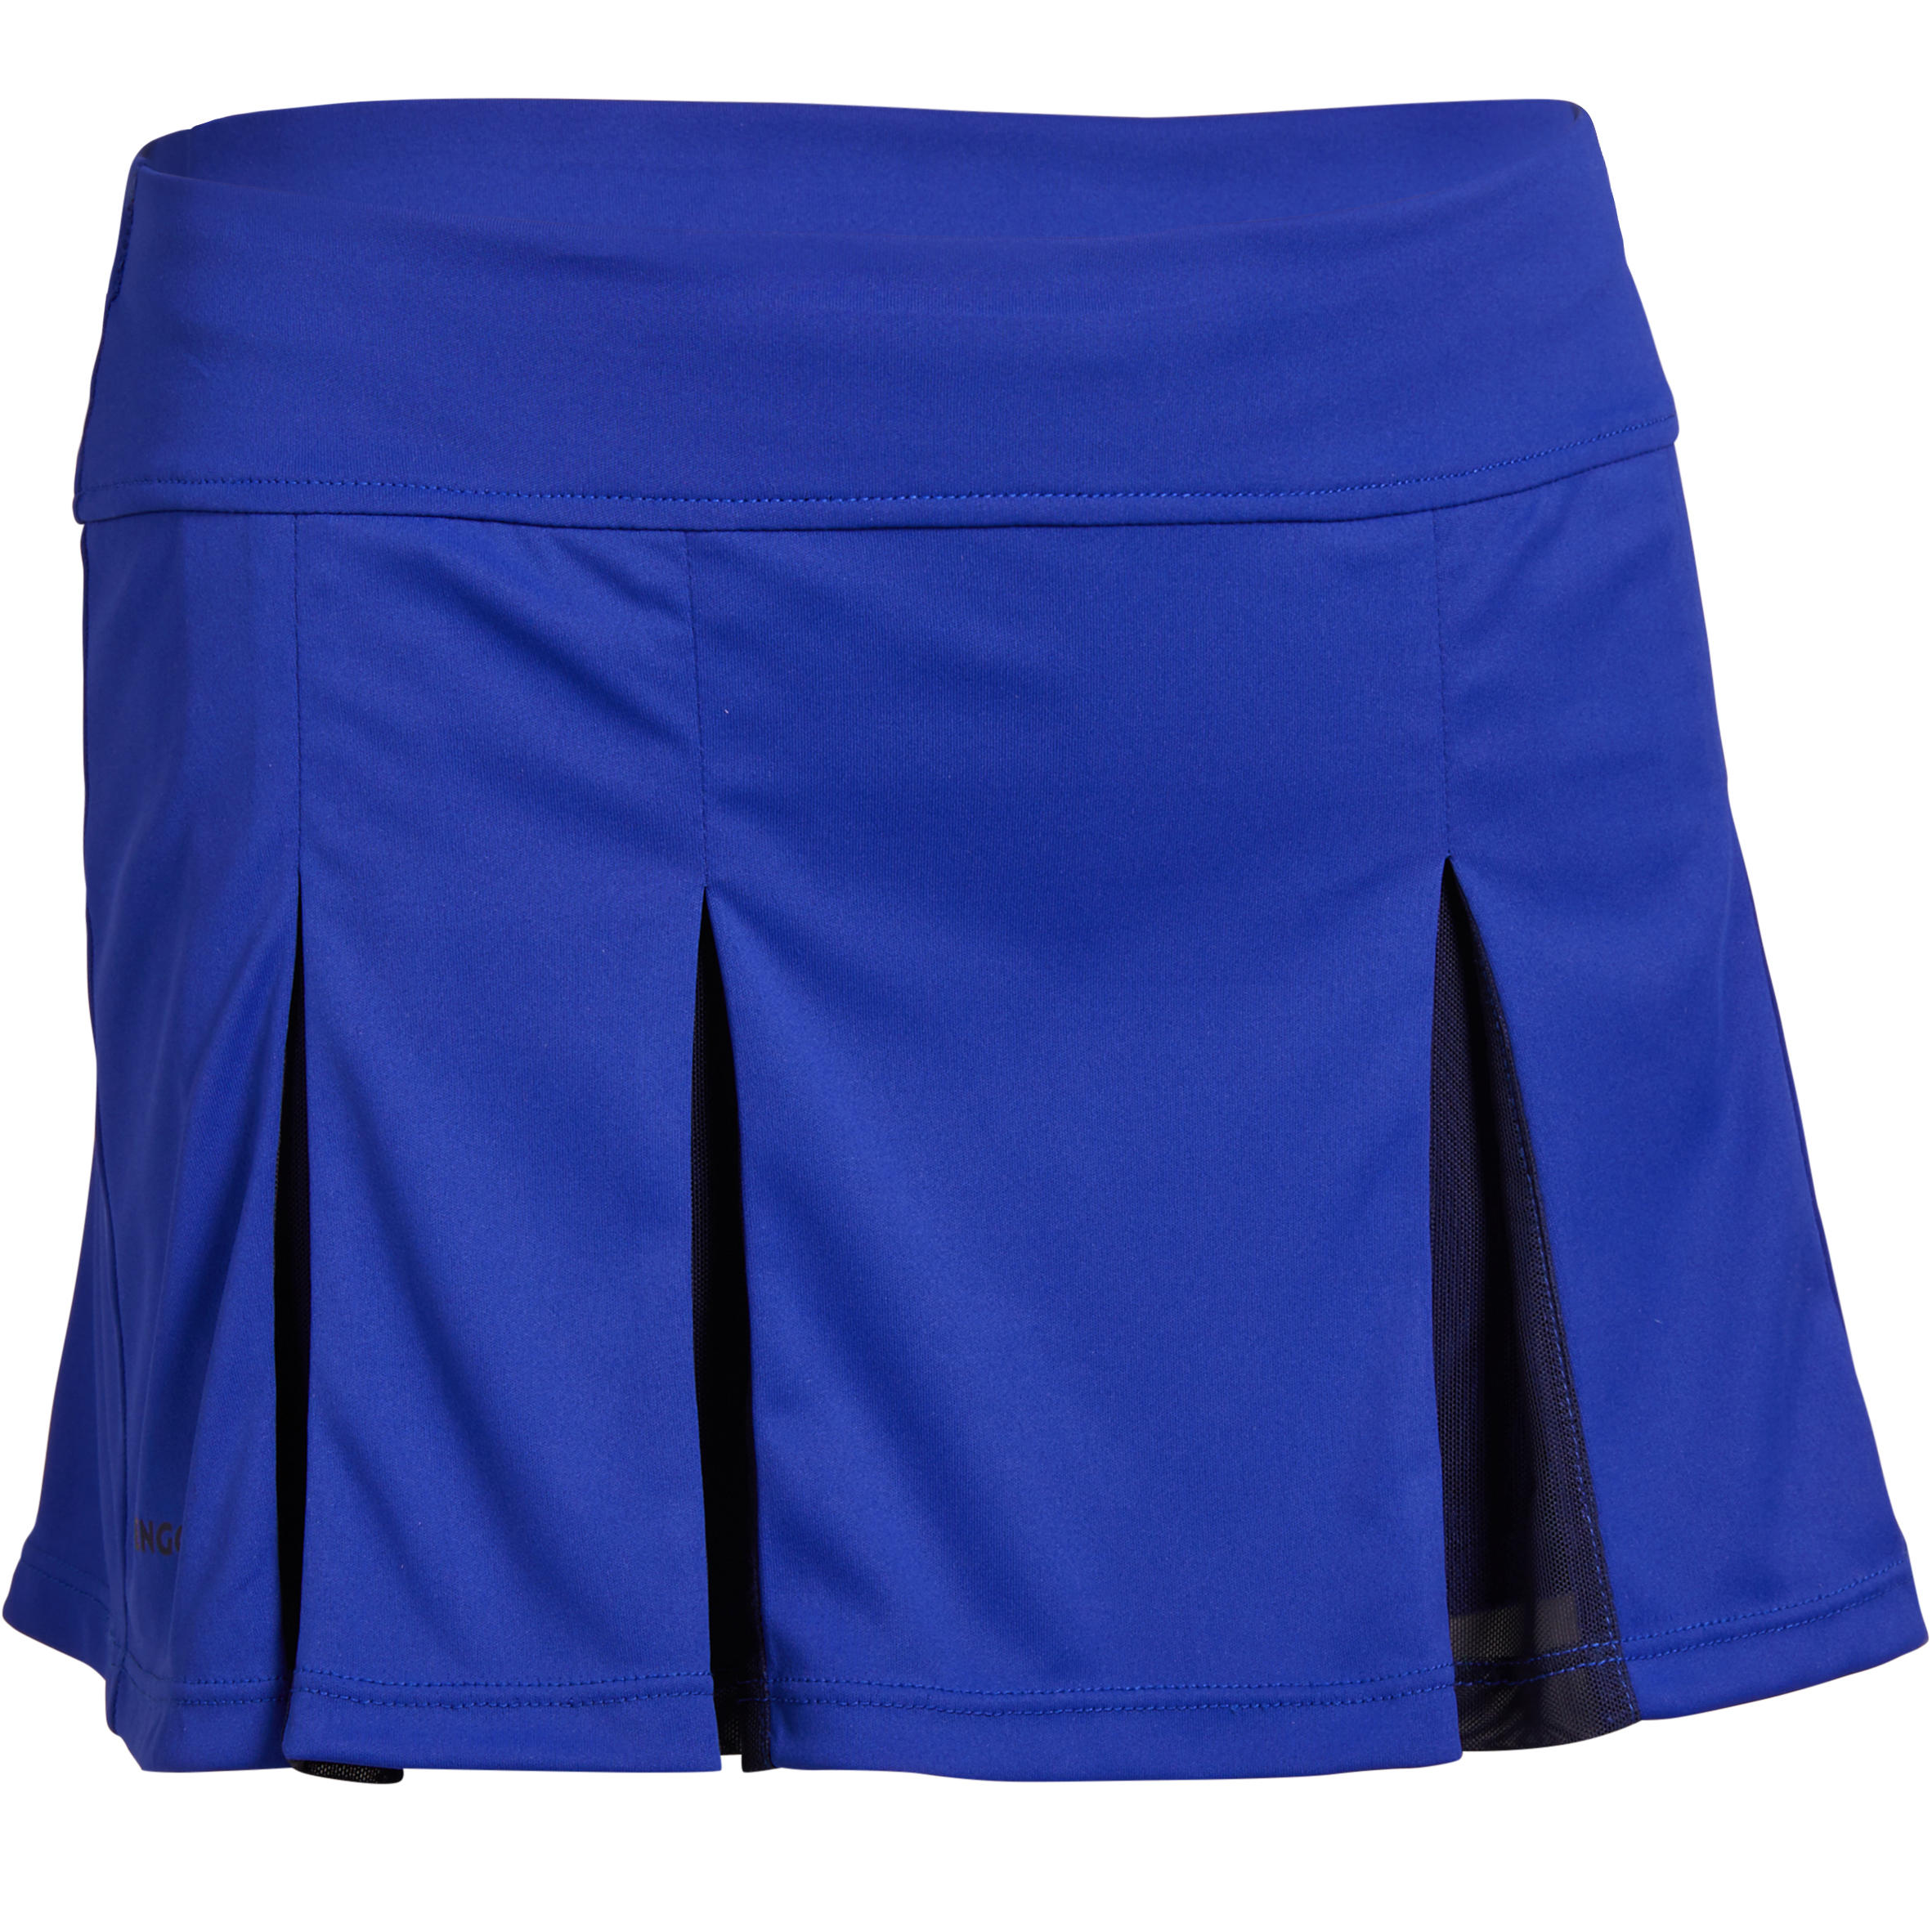 900 Girls' Skirt - Blue 1/8